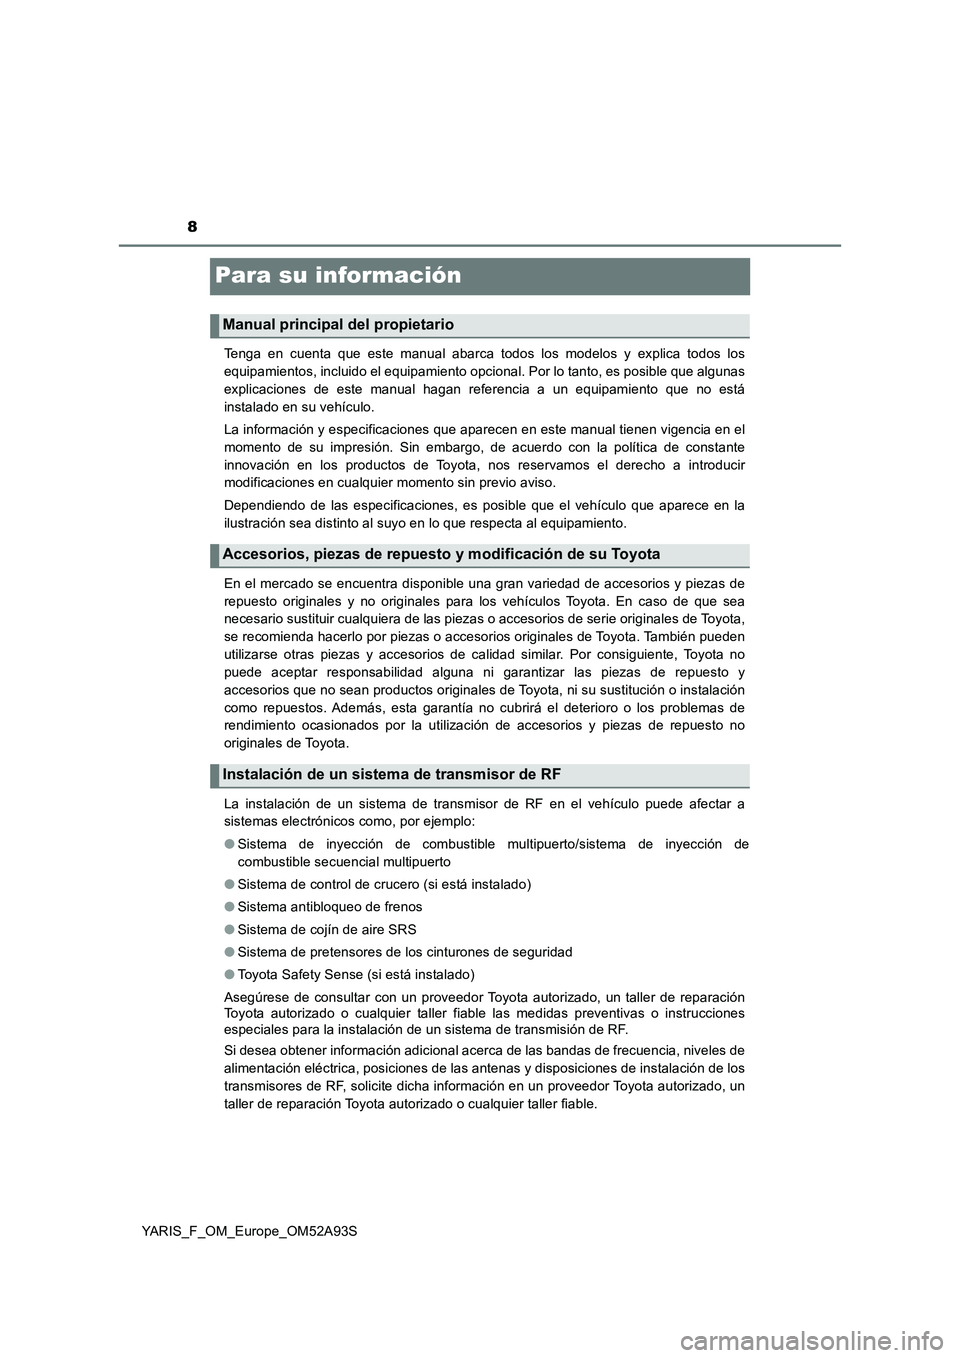 TOYOTA YARIS HATCHBACK 2019  Manual del propietario (in Spanish) 8
YARIS_F_OM_Europe_OM52A93S
Para su información
Tenga en cuenta que este manual abarca todos los modelos y explica todos los
equipamientos, incluido el equipamiento opcional. Por lo tanto, es posibl